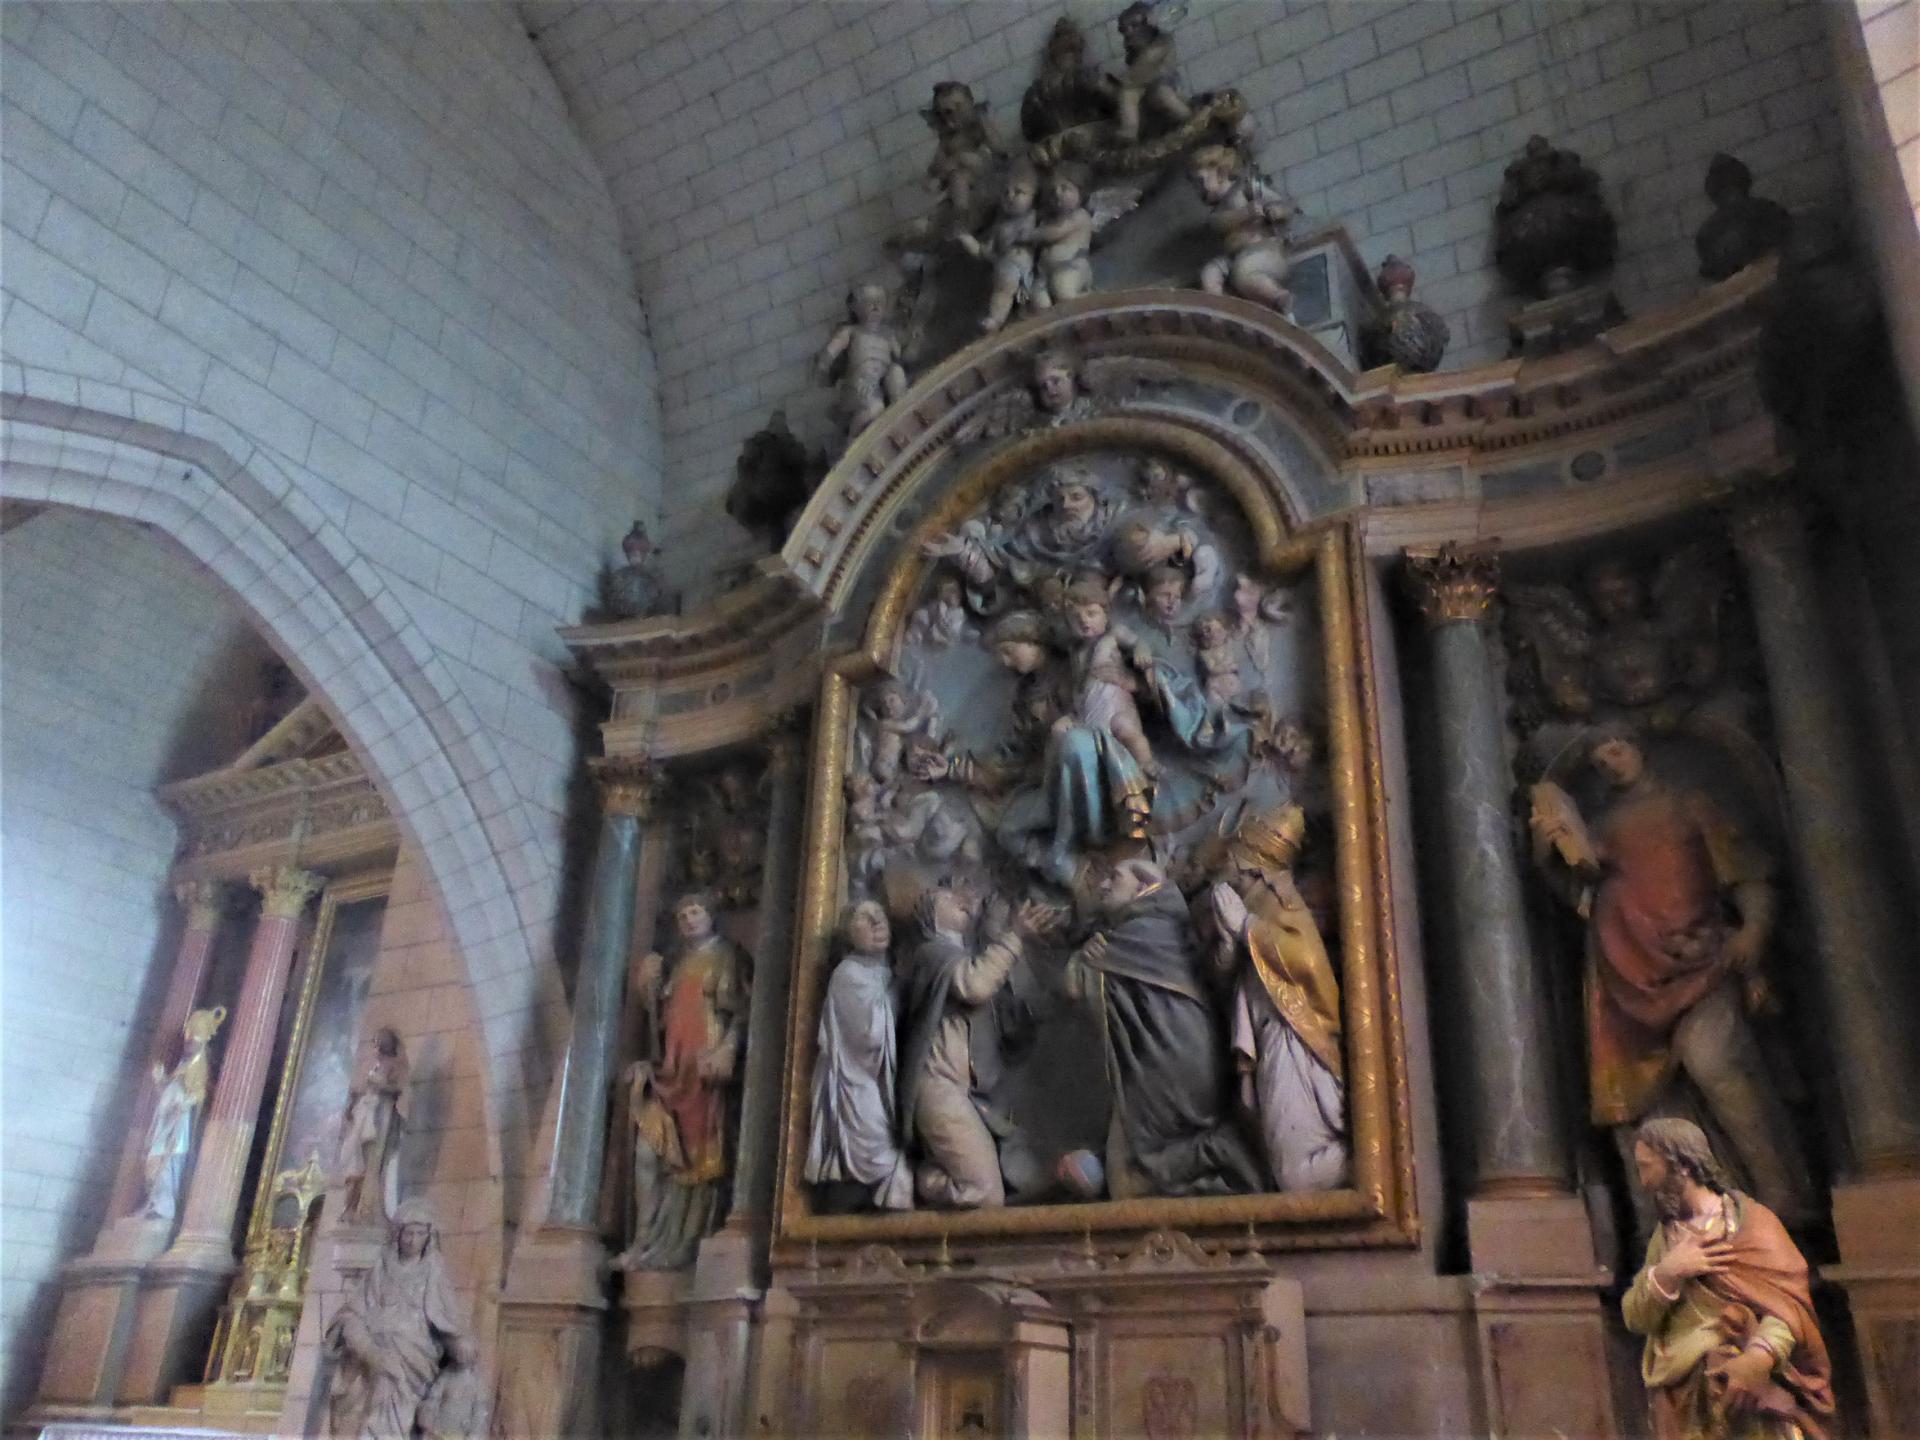 Les Gabriels, retables de l'église de Saint-Paterne, milieu XVIIe, cl. Ph. Cachau